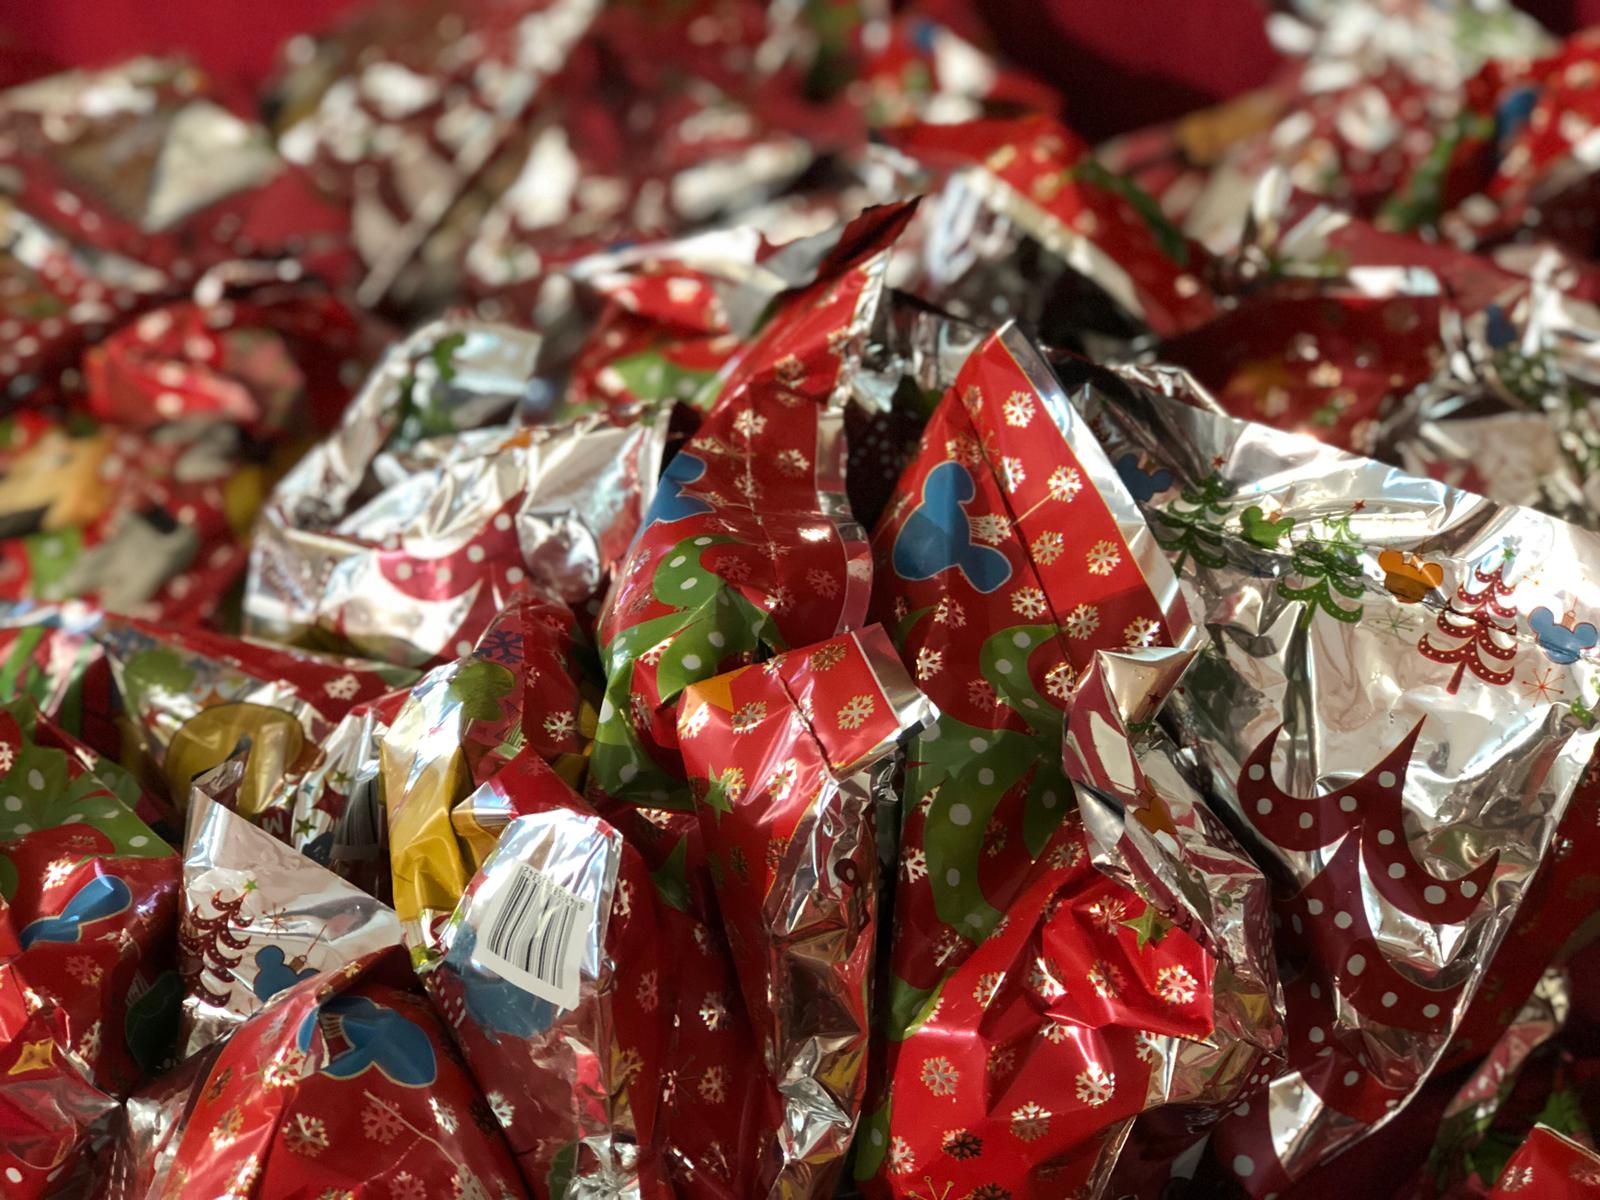 La Cabalgata de los Reyes Magos reparte hoy 4.000 kilos de caramelos en un cortejo que amplía el colorido y la animación  1